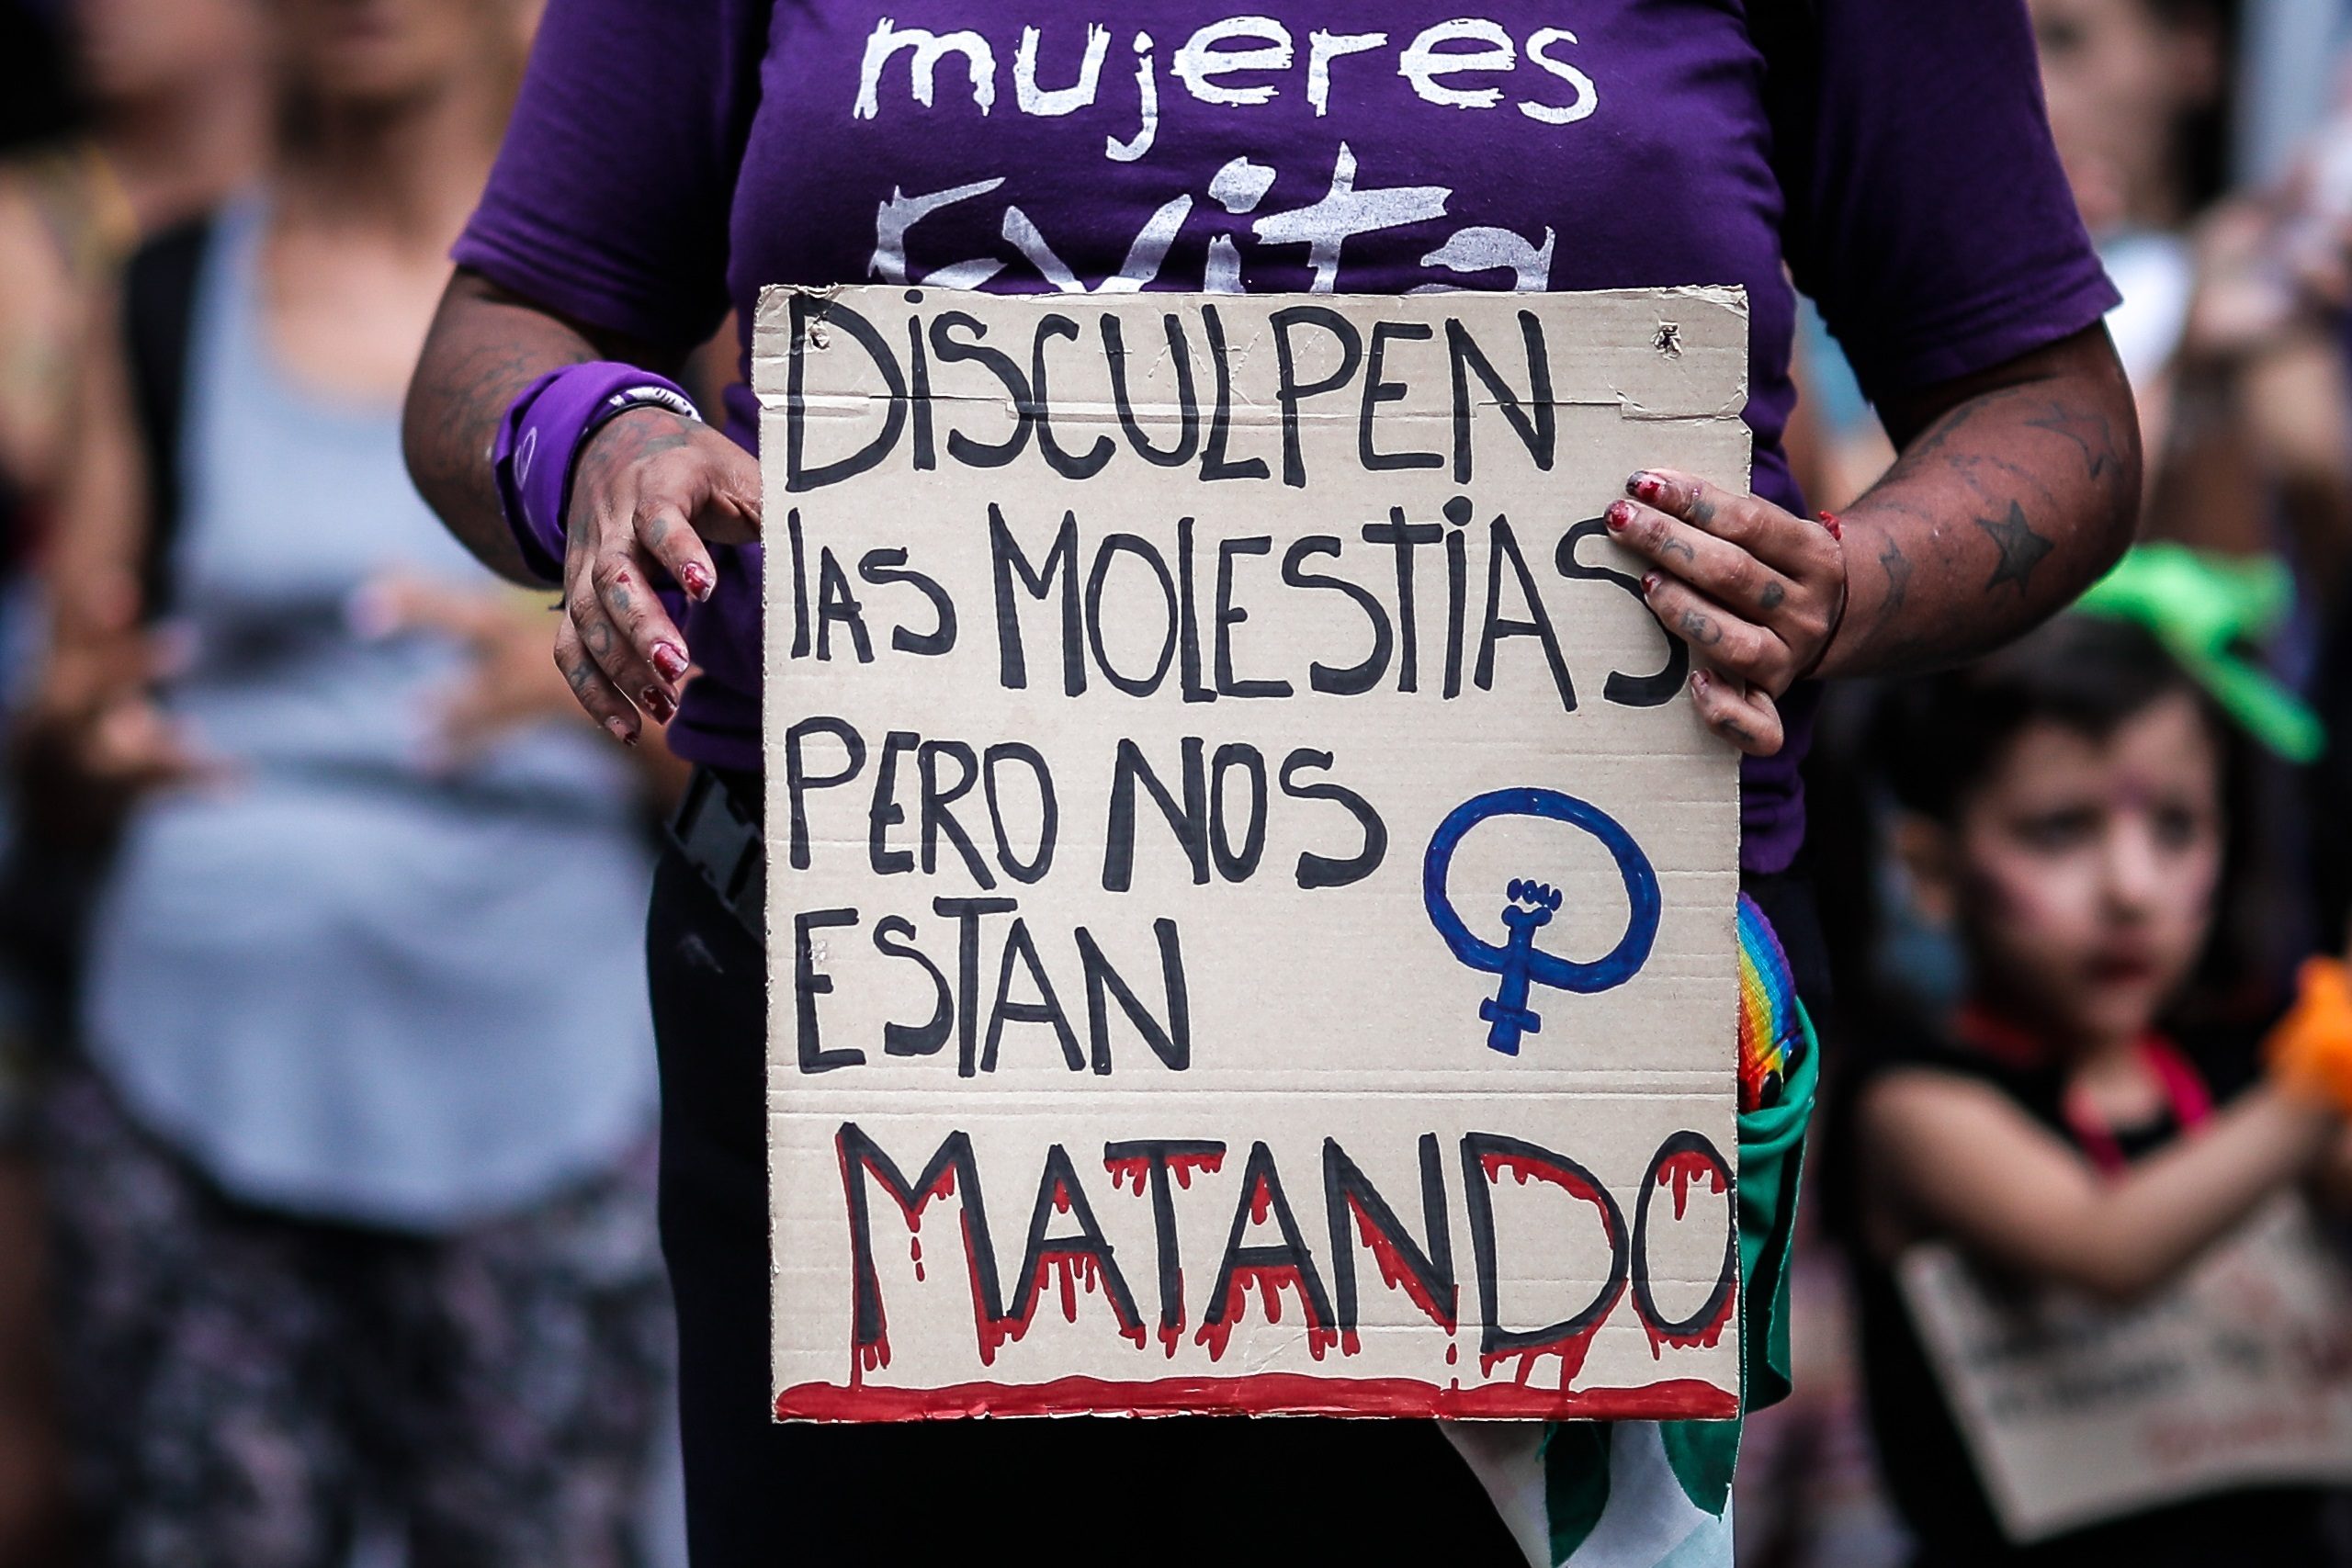 Un nuevo feminicidio tras haber denunciado al agresor conmociona a Argentina